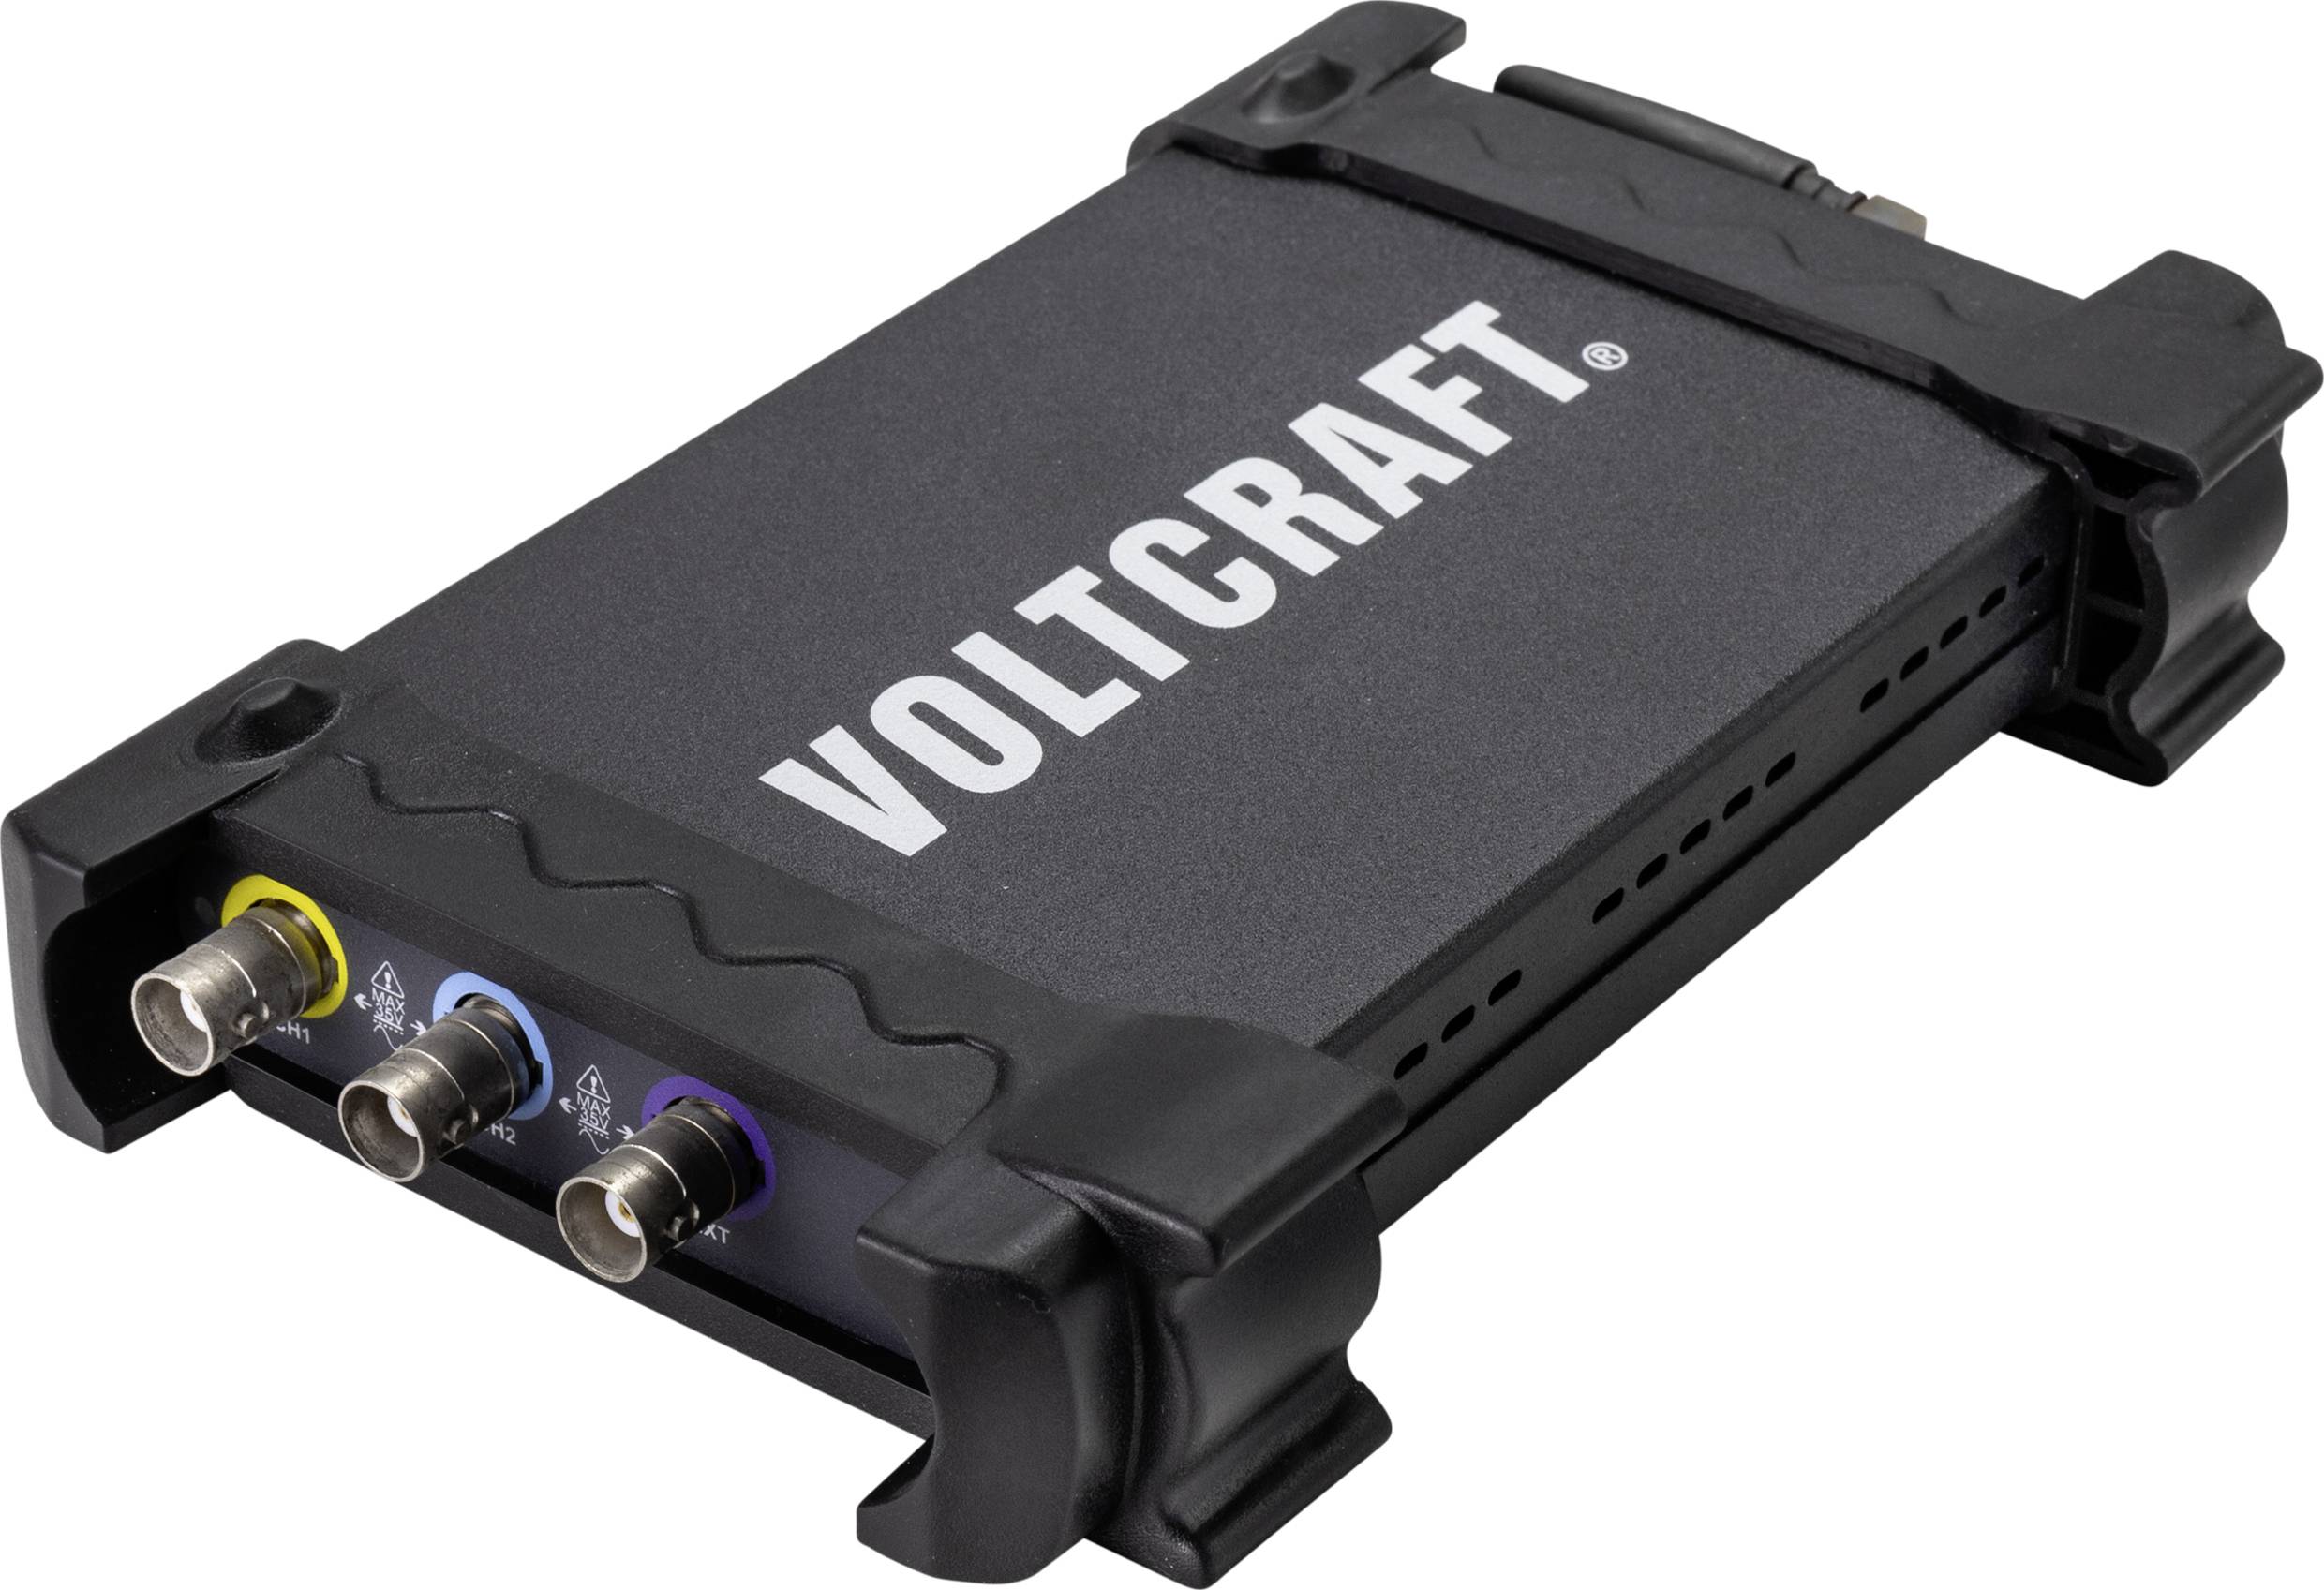 VOLTCRAFT 1070D USB-Oszilloskop 70 MHz 250 MSa/s 6 kpts 8 Bit Digital-Speicher (DSO)